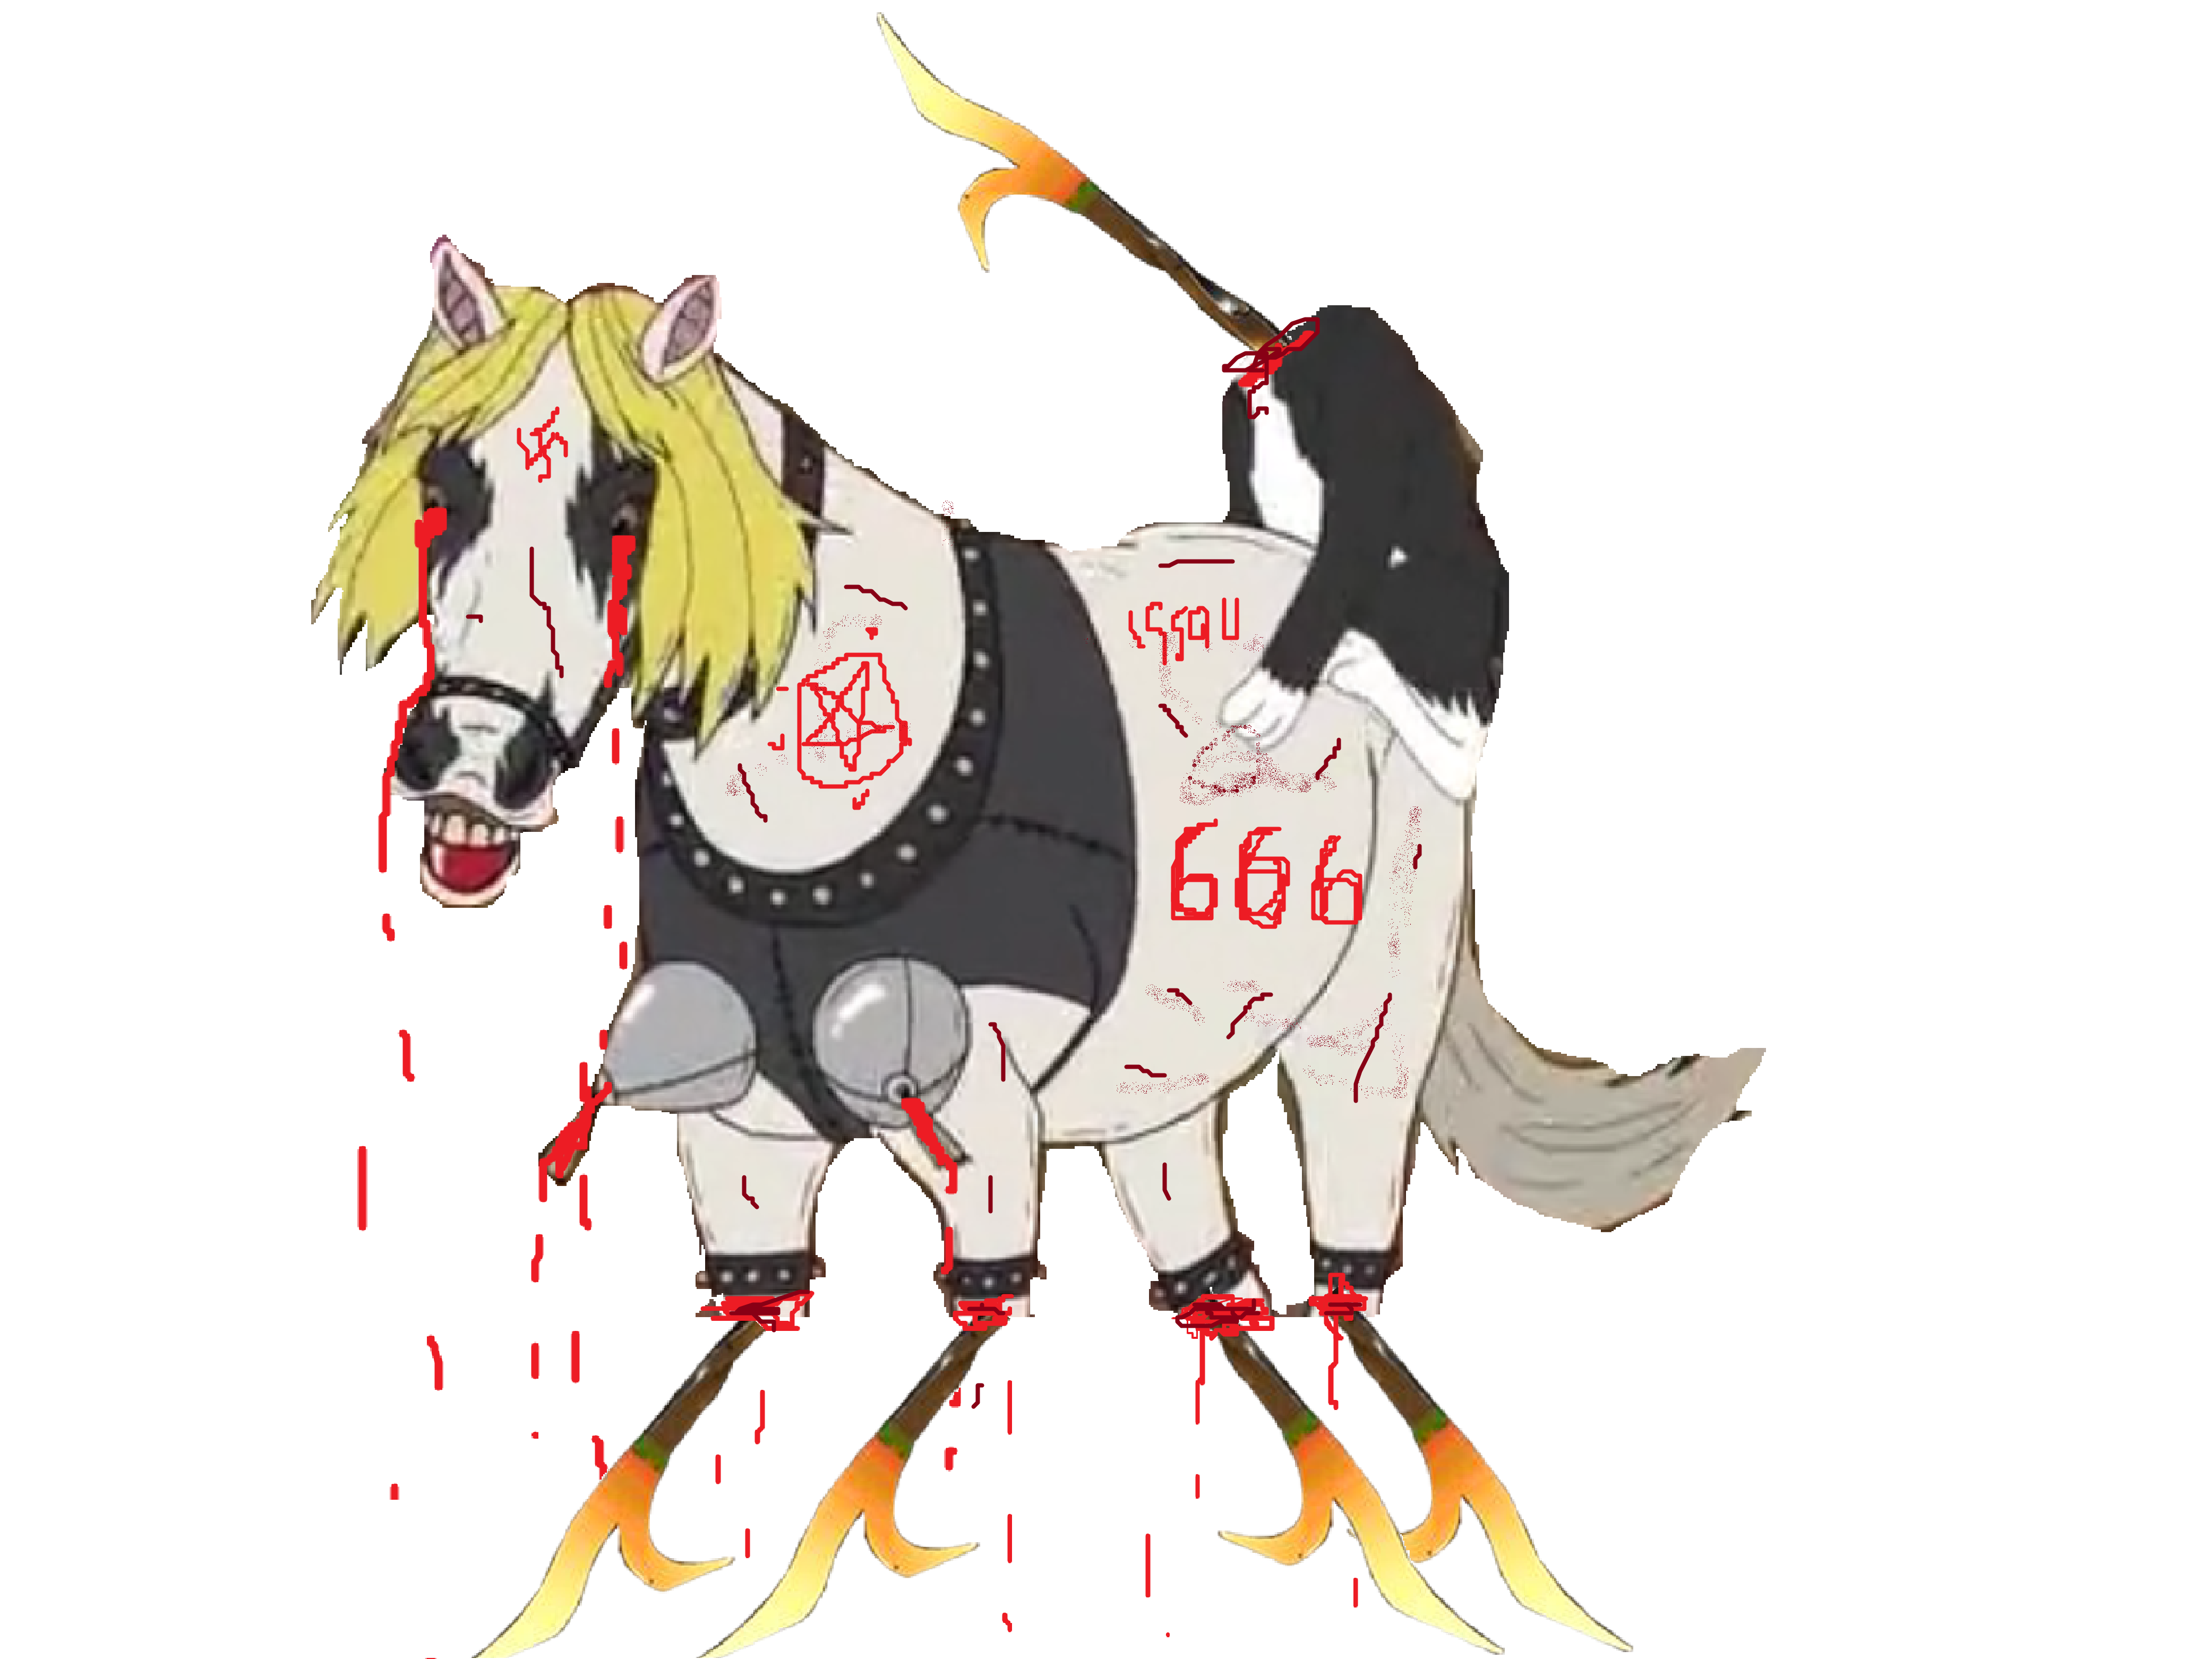 tison pickles risitas cheval mr 666 gif romero